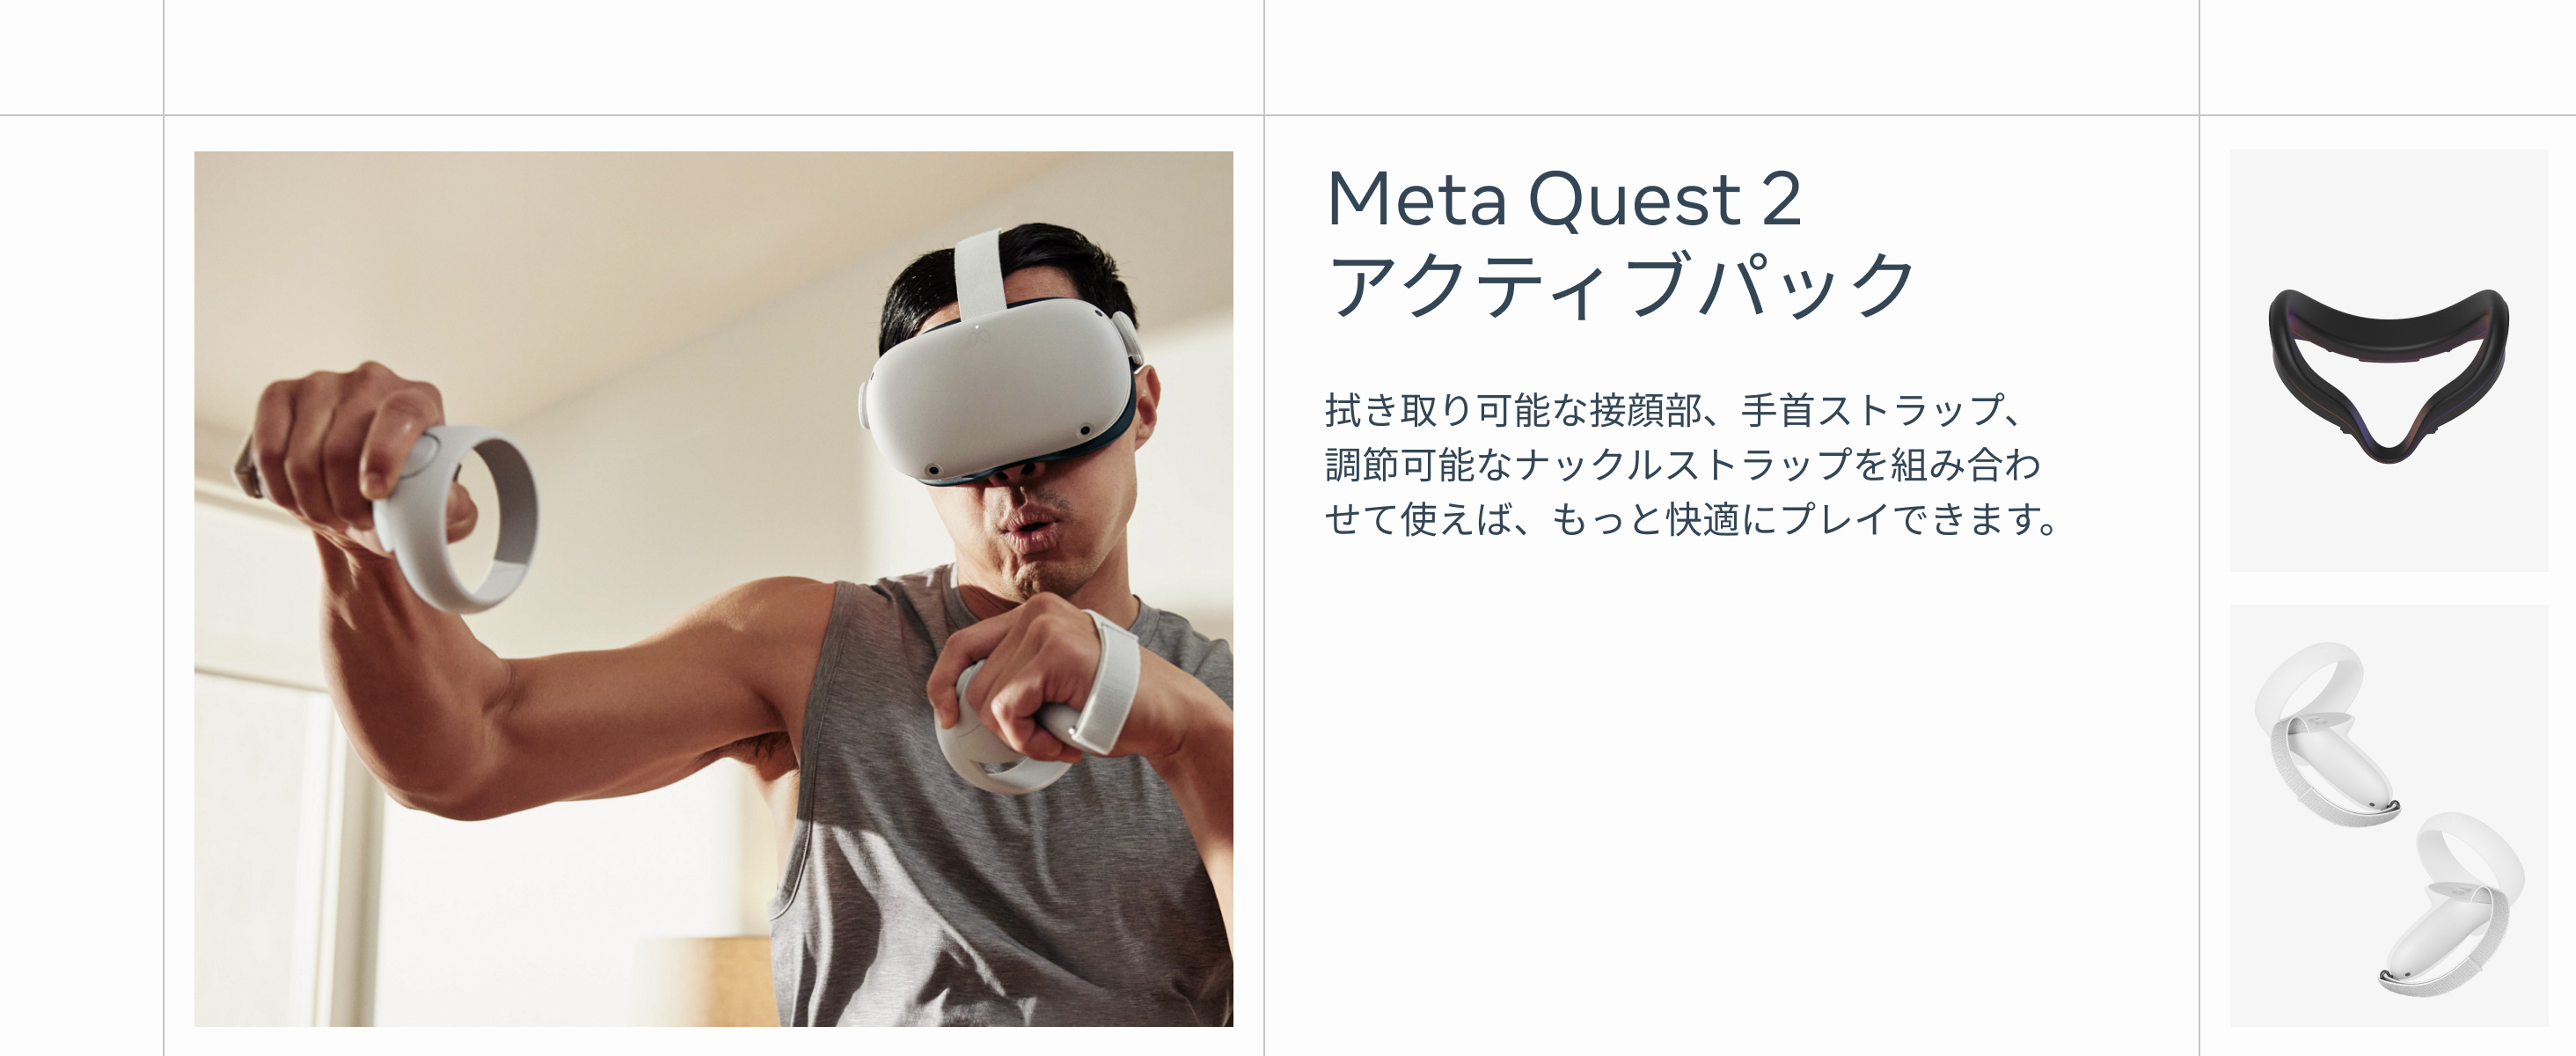 Meta Quest2 アクティブパック 機器を汚れや危険から守るために必要なものが揃っているので、アクティブに動くエクササイズやゲームも安心して楽しめます。